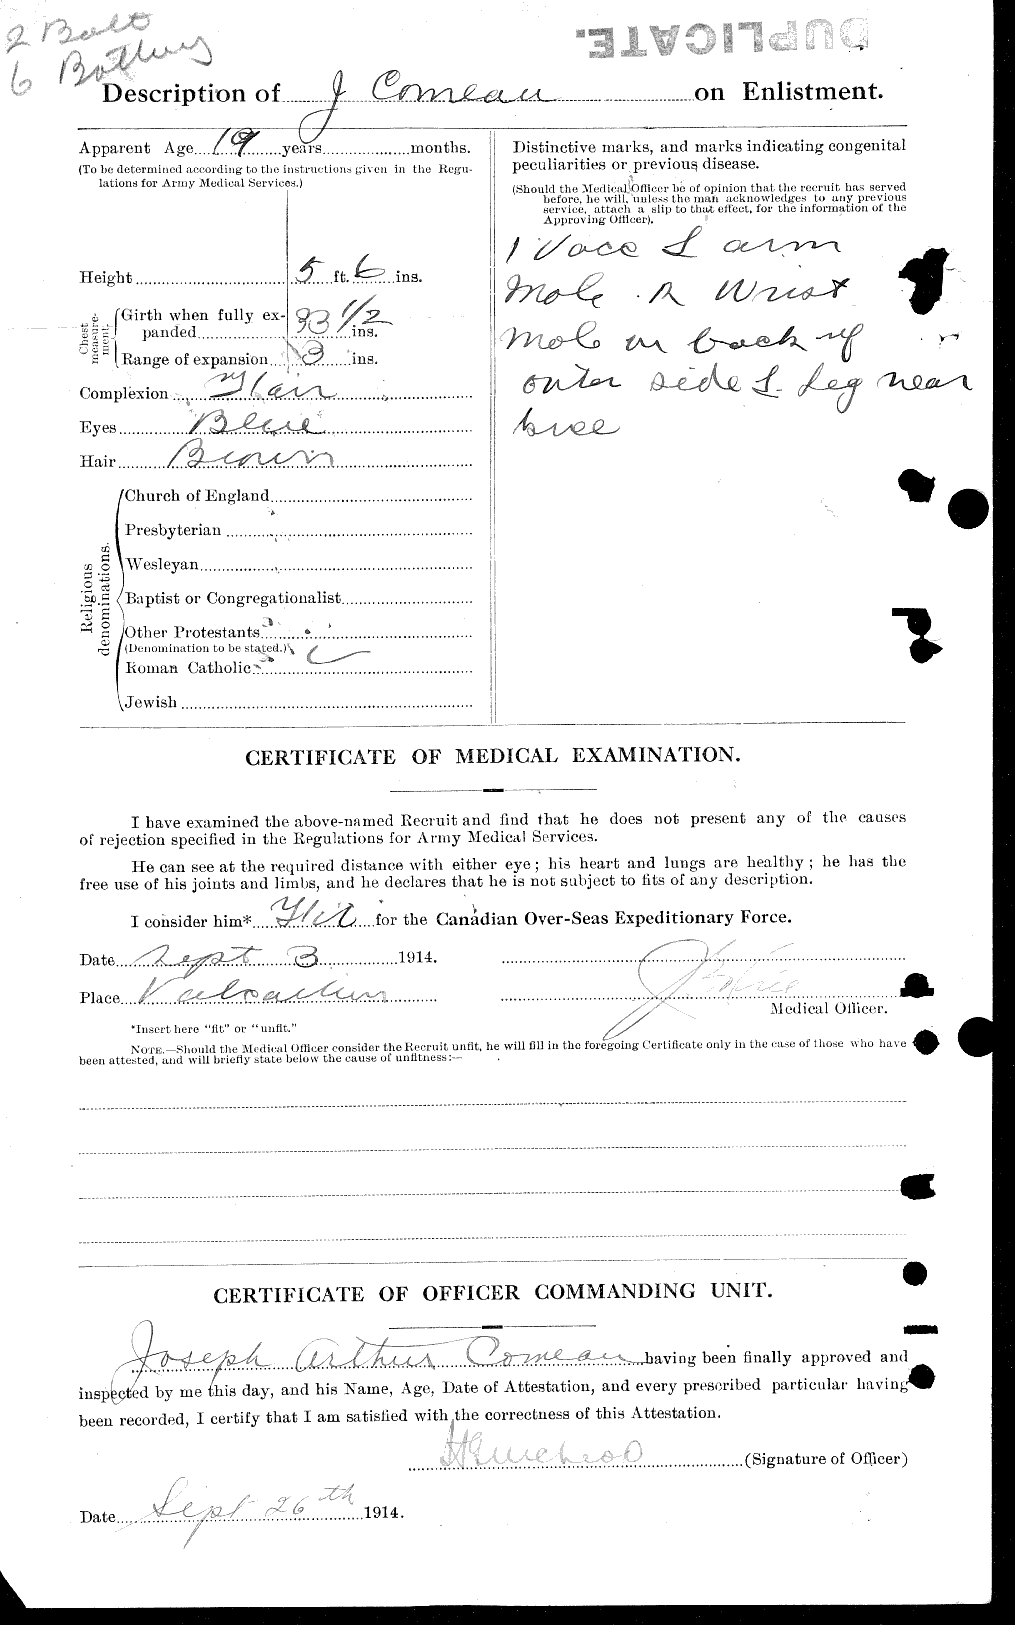 Dossiers du Personnel de la Première Guerre mondiale - CEC 034658b